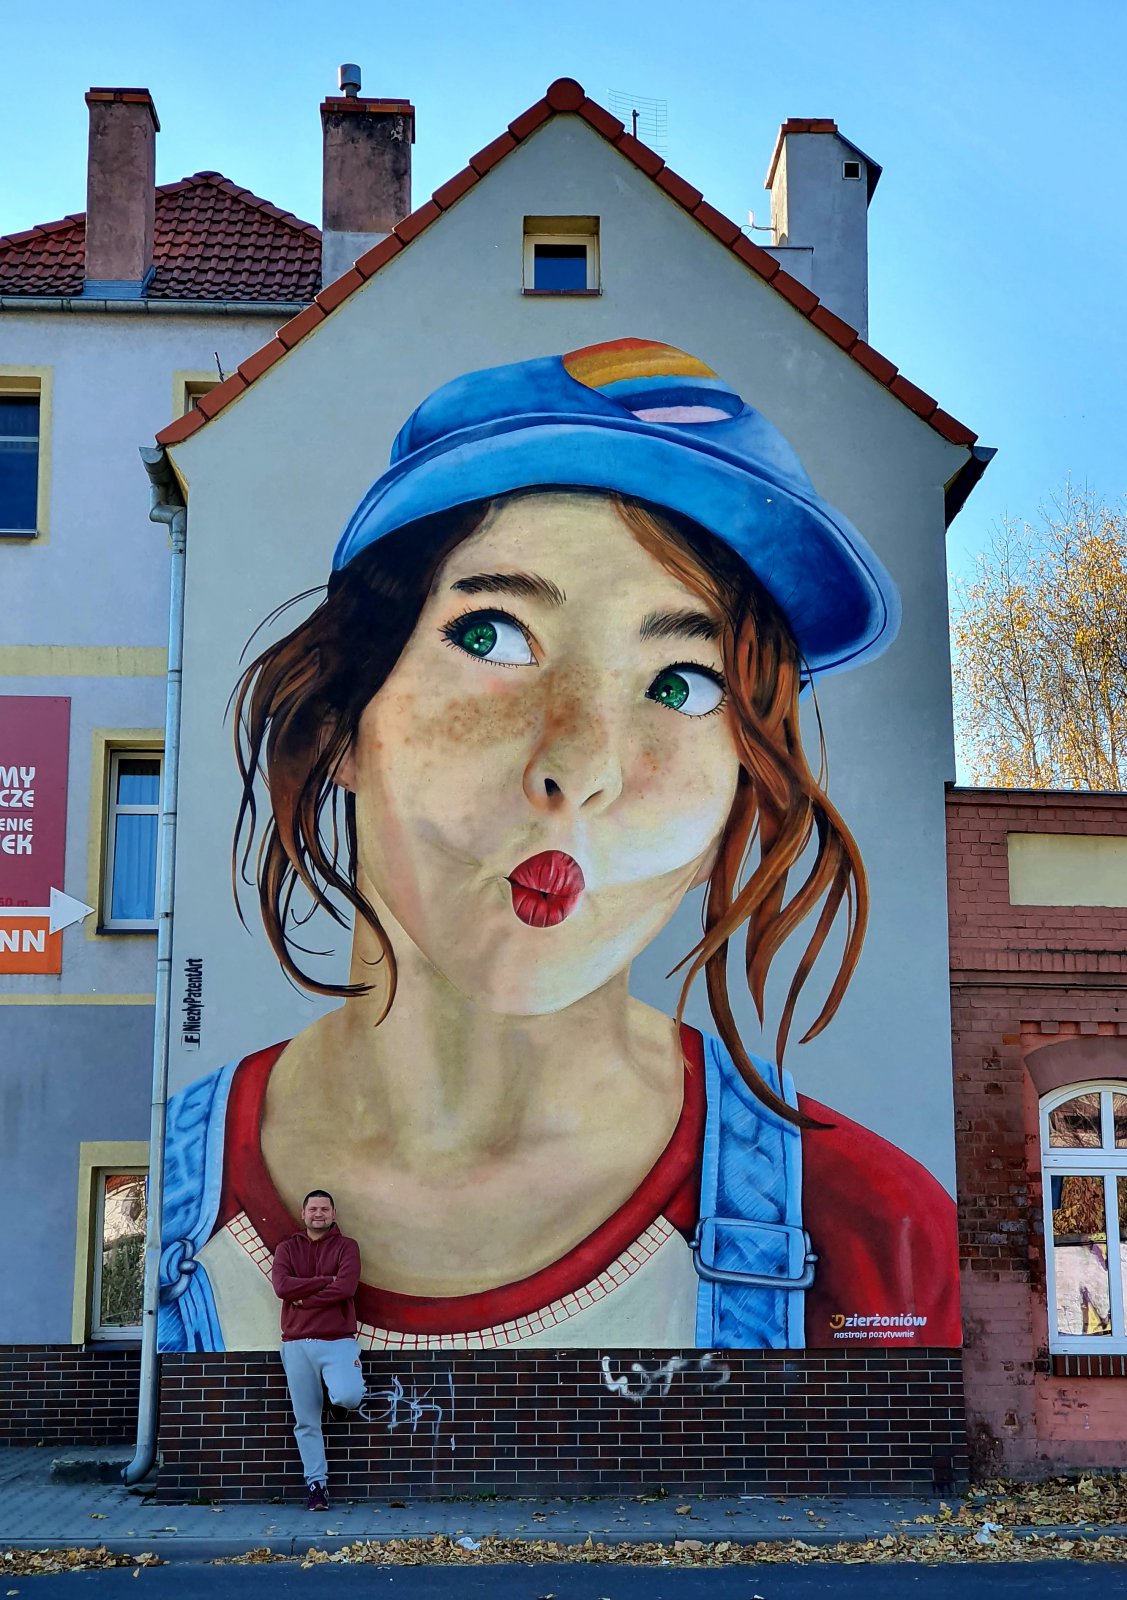 Mural, twarz młodej dziewczyny, przy muralu stroi jego autor